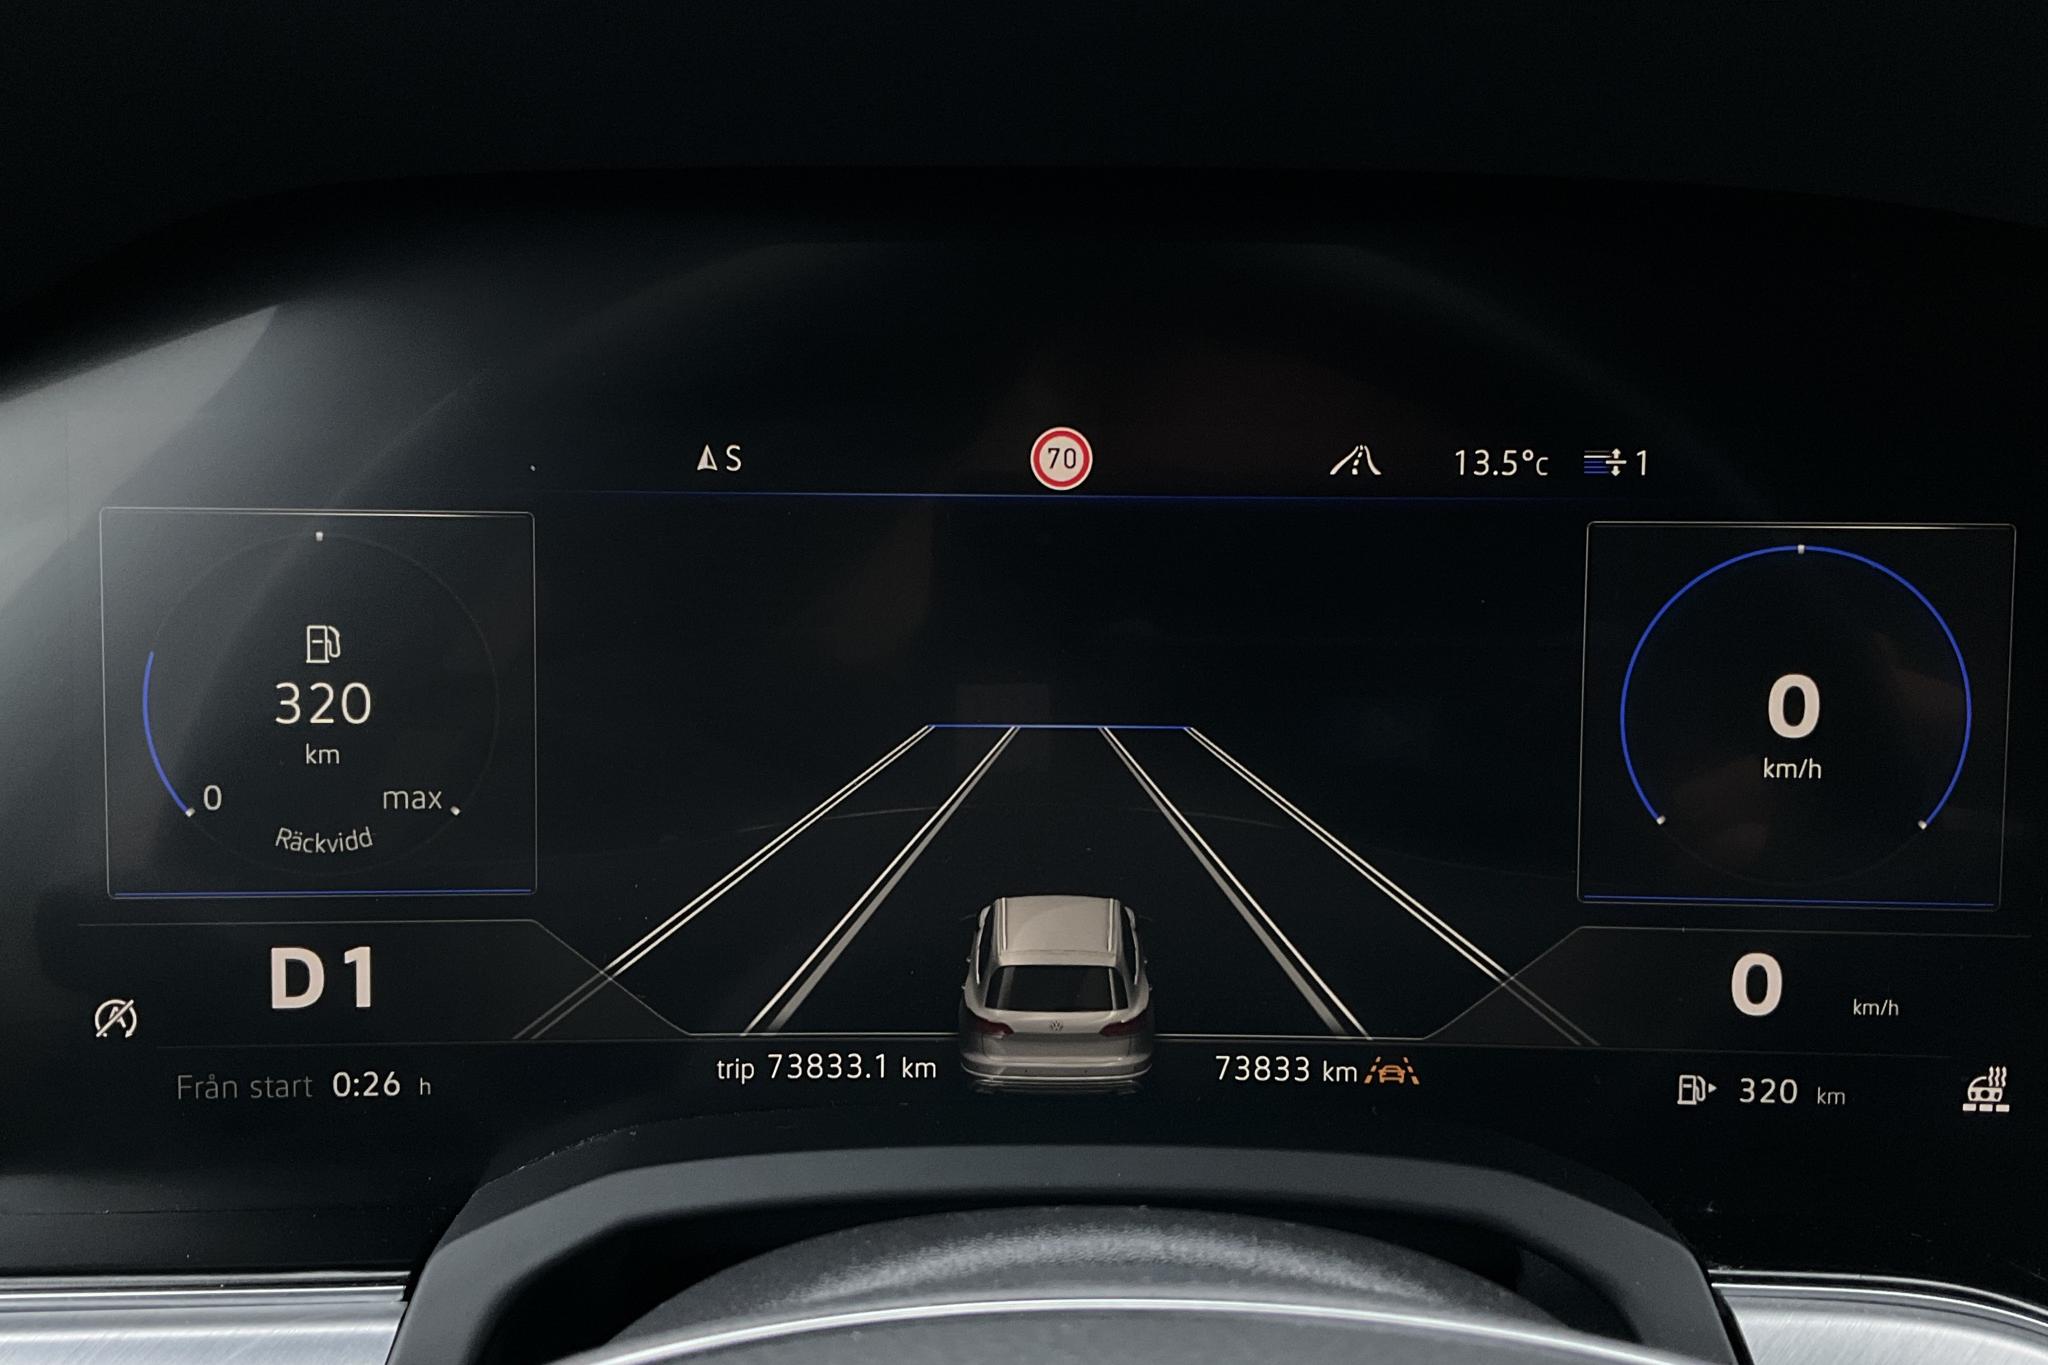 VW Touareg V6 TDI 4Motion (286hk) - 73 830 km - Automatic - black - 2019